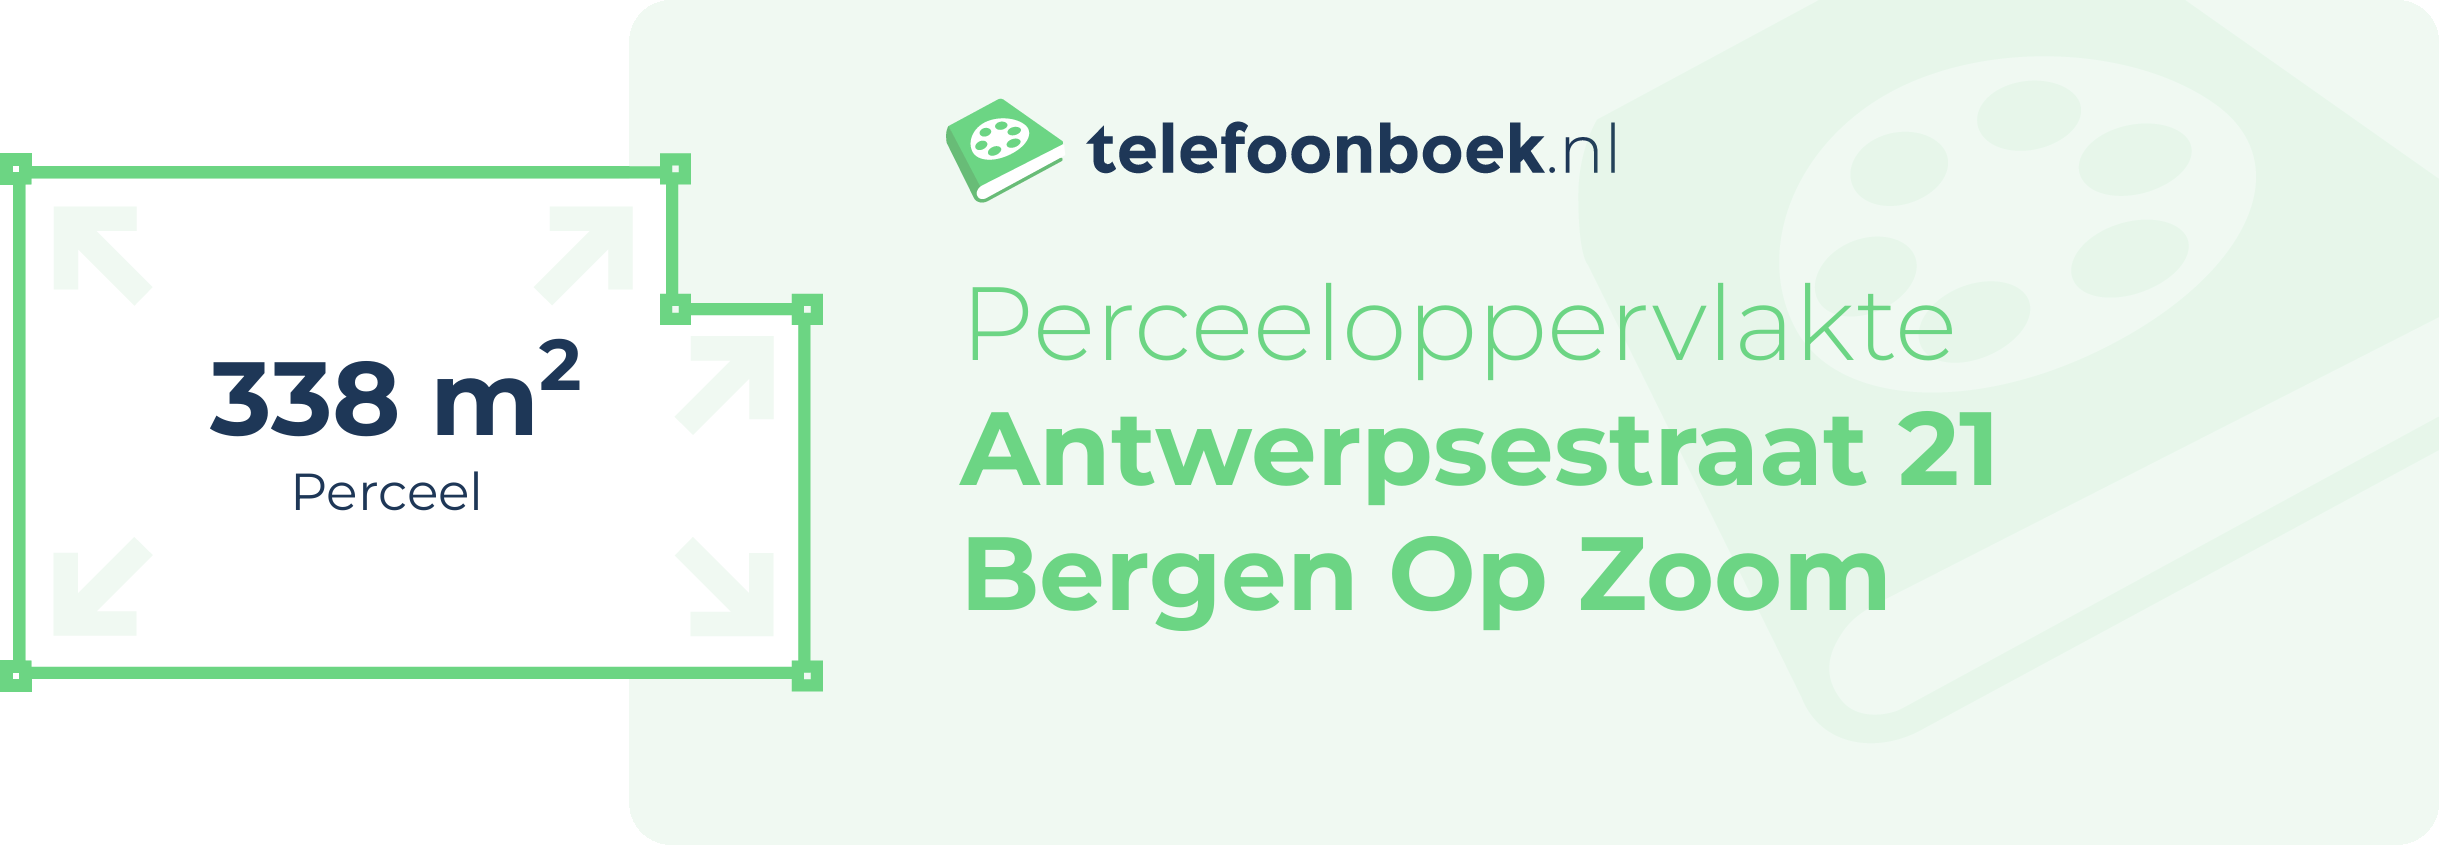 Perceeloppervlakte Antwerpsestraat 21 Bergen Op Zoom